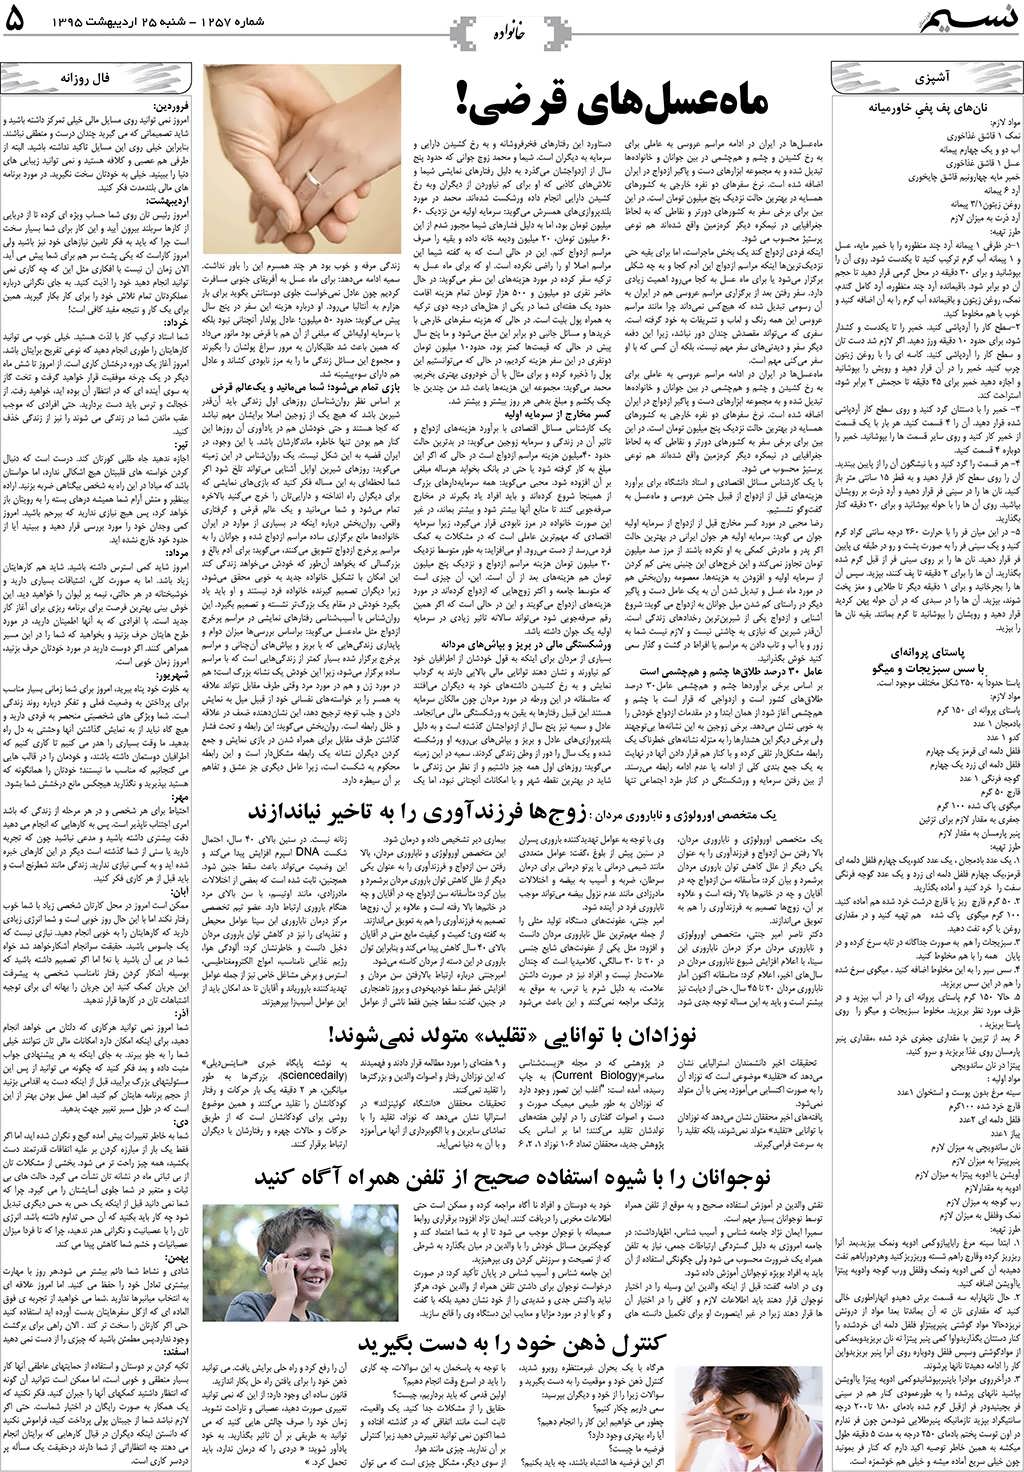 صفحه خانواده روزنامه نسیم شماره 1257